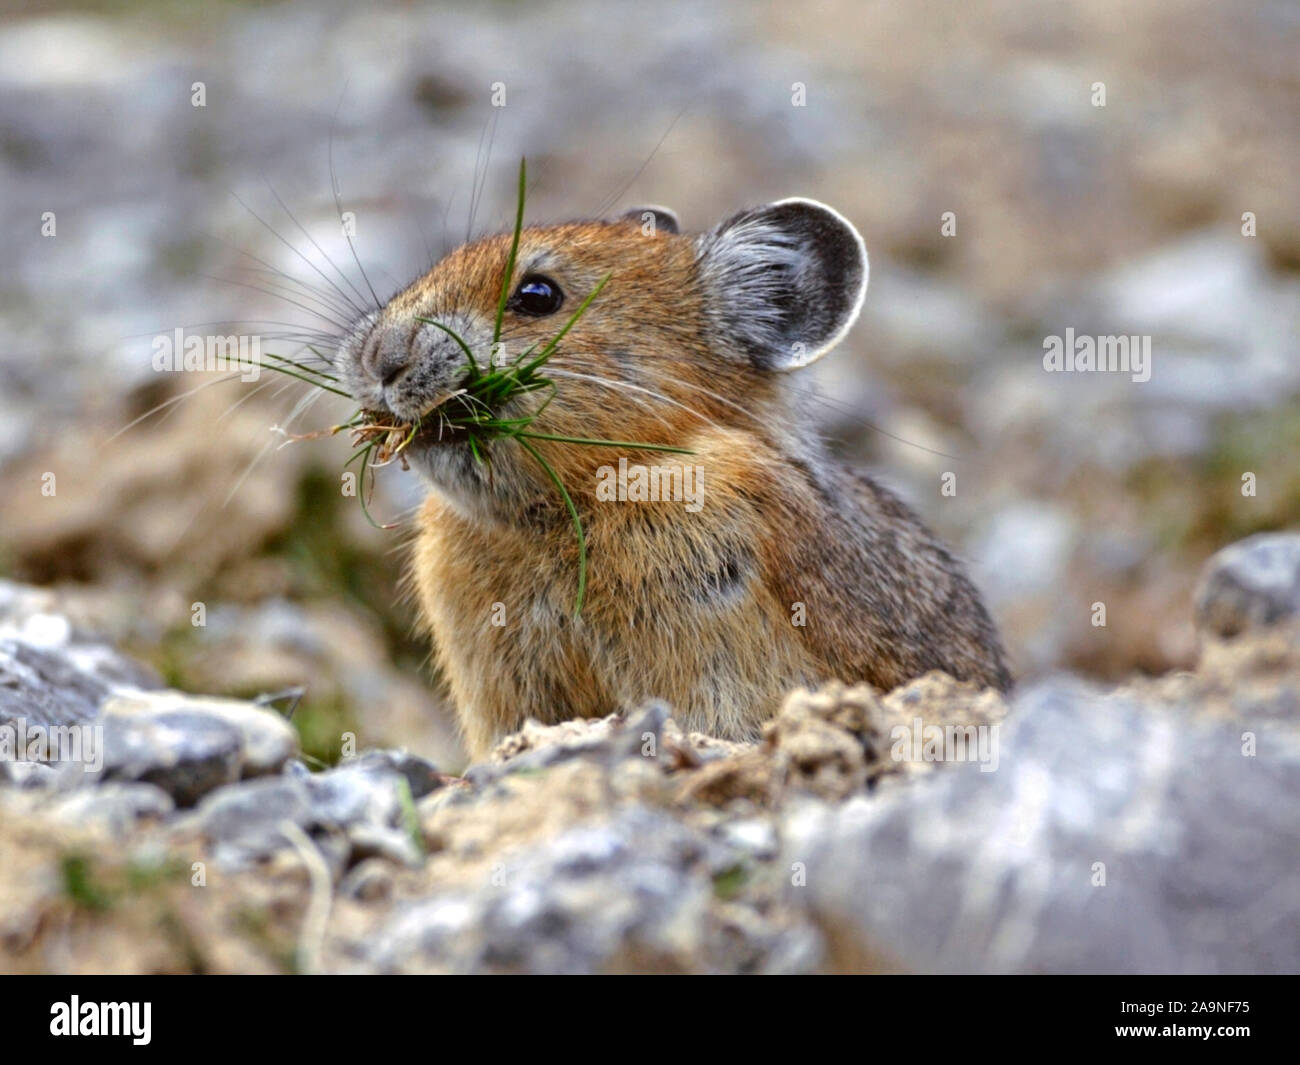 Pika permanente sulla roccia, portando il taglio di erba in bocca, che è memorizzato in den per alimentare d'inverno. Foto Stock